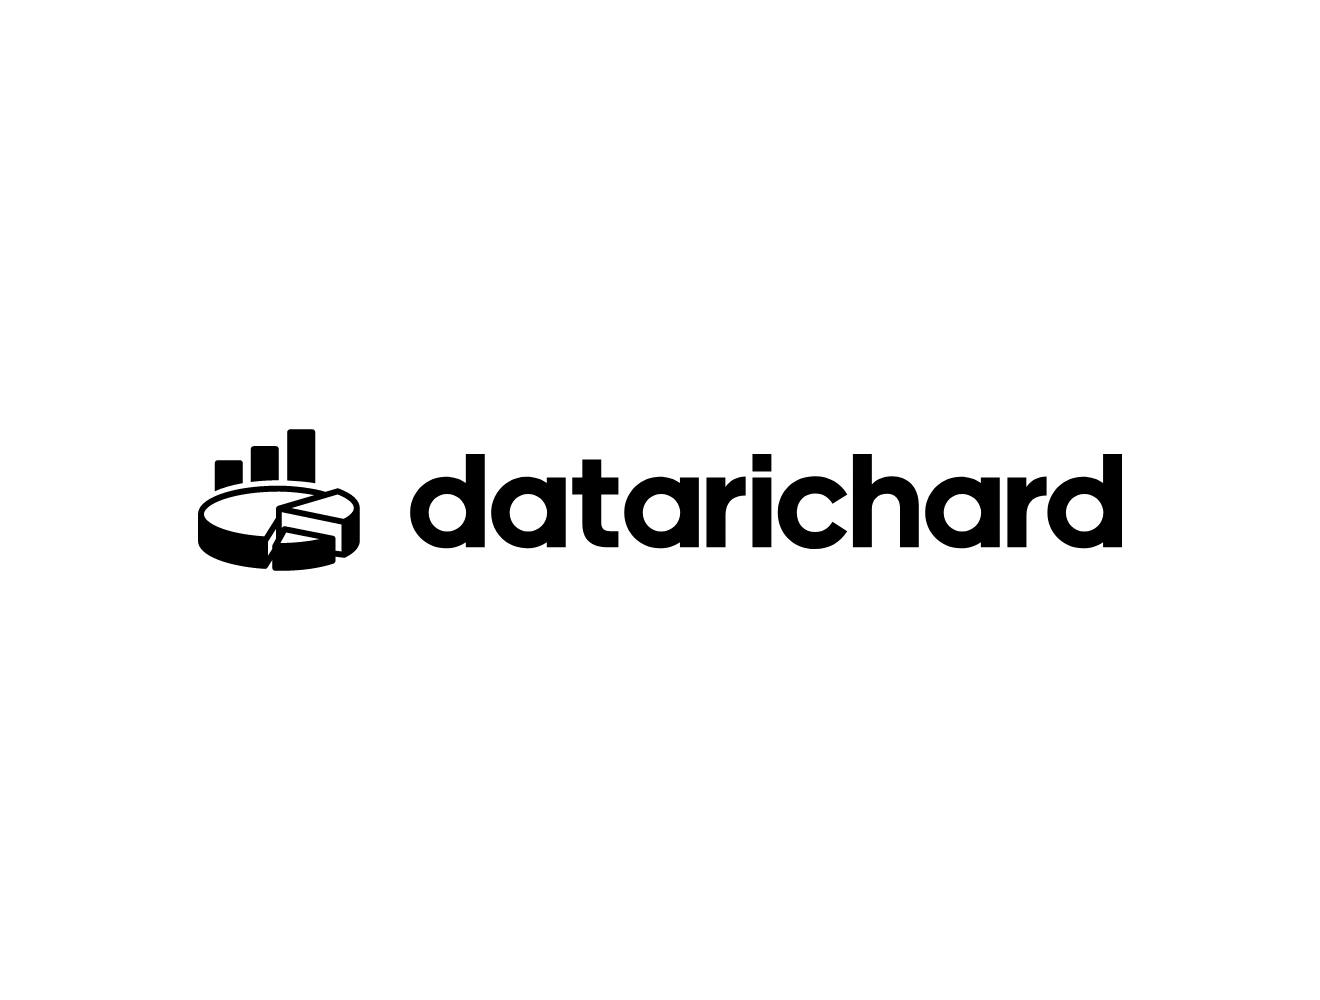 DATA_RICHARD_logo.png